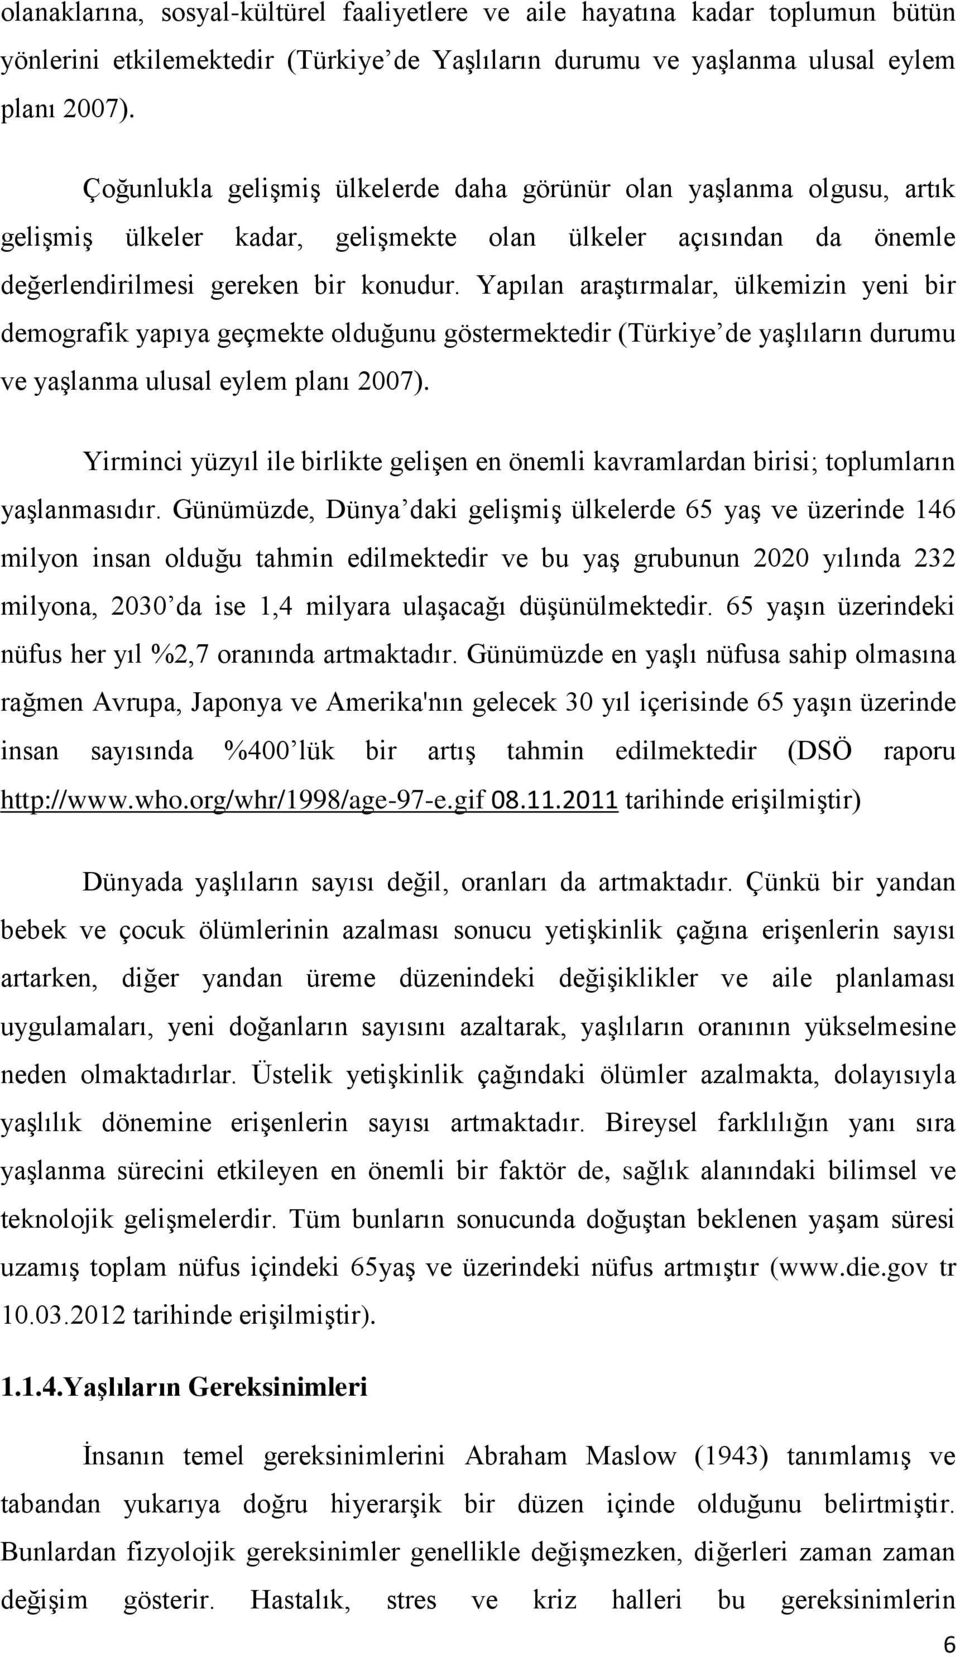 Yapılan araģtırmalar, ülkemizin yeni bir demografik yapıya geçmekte olduğunu göstermektedir (Türkiye de yaģlıların durumu ve yaģlanma ulusal eylem planı 2007).